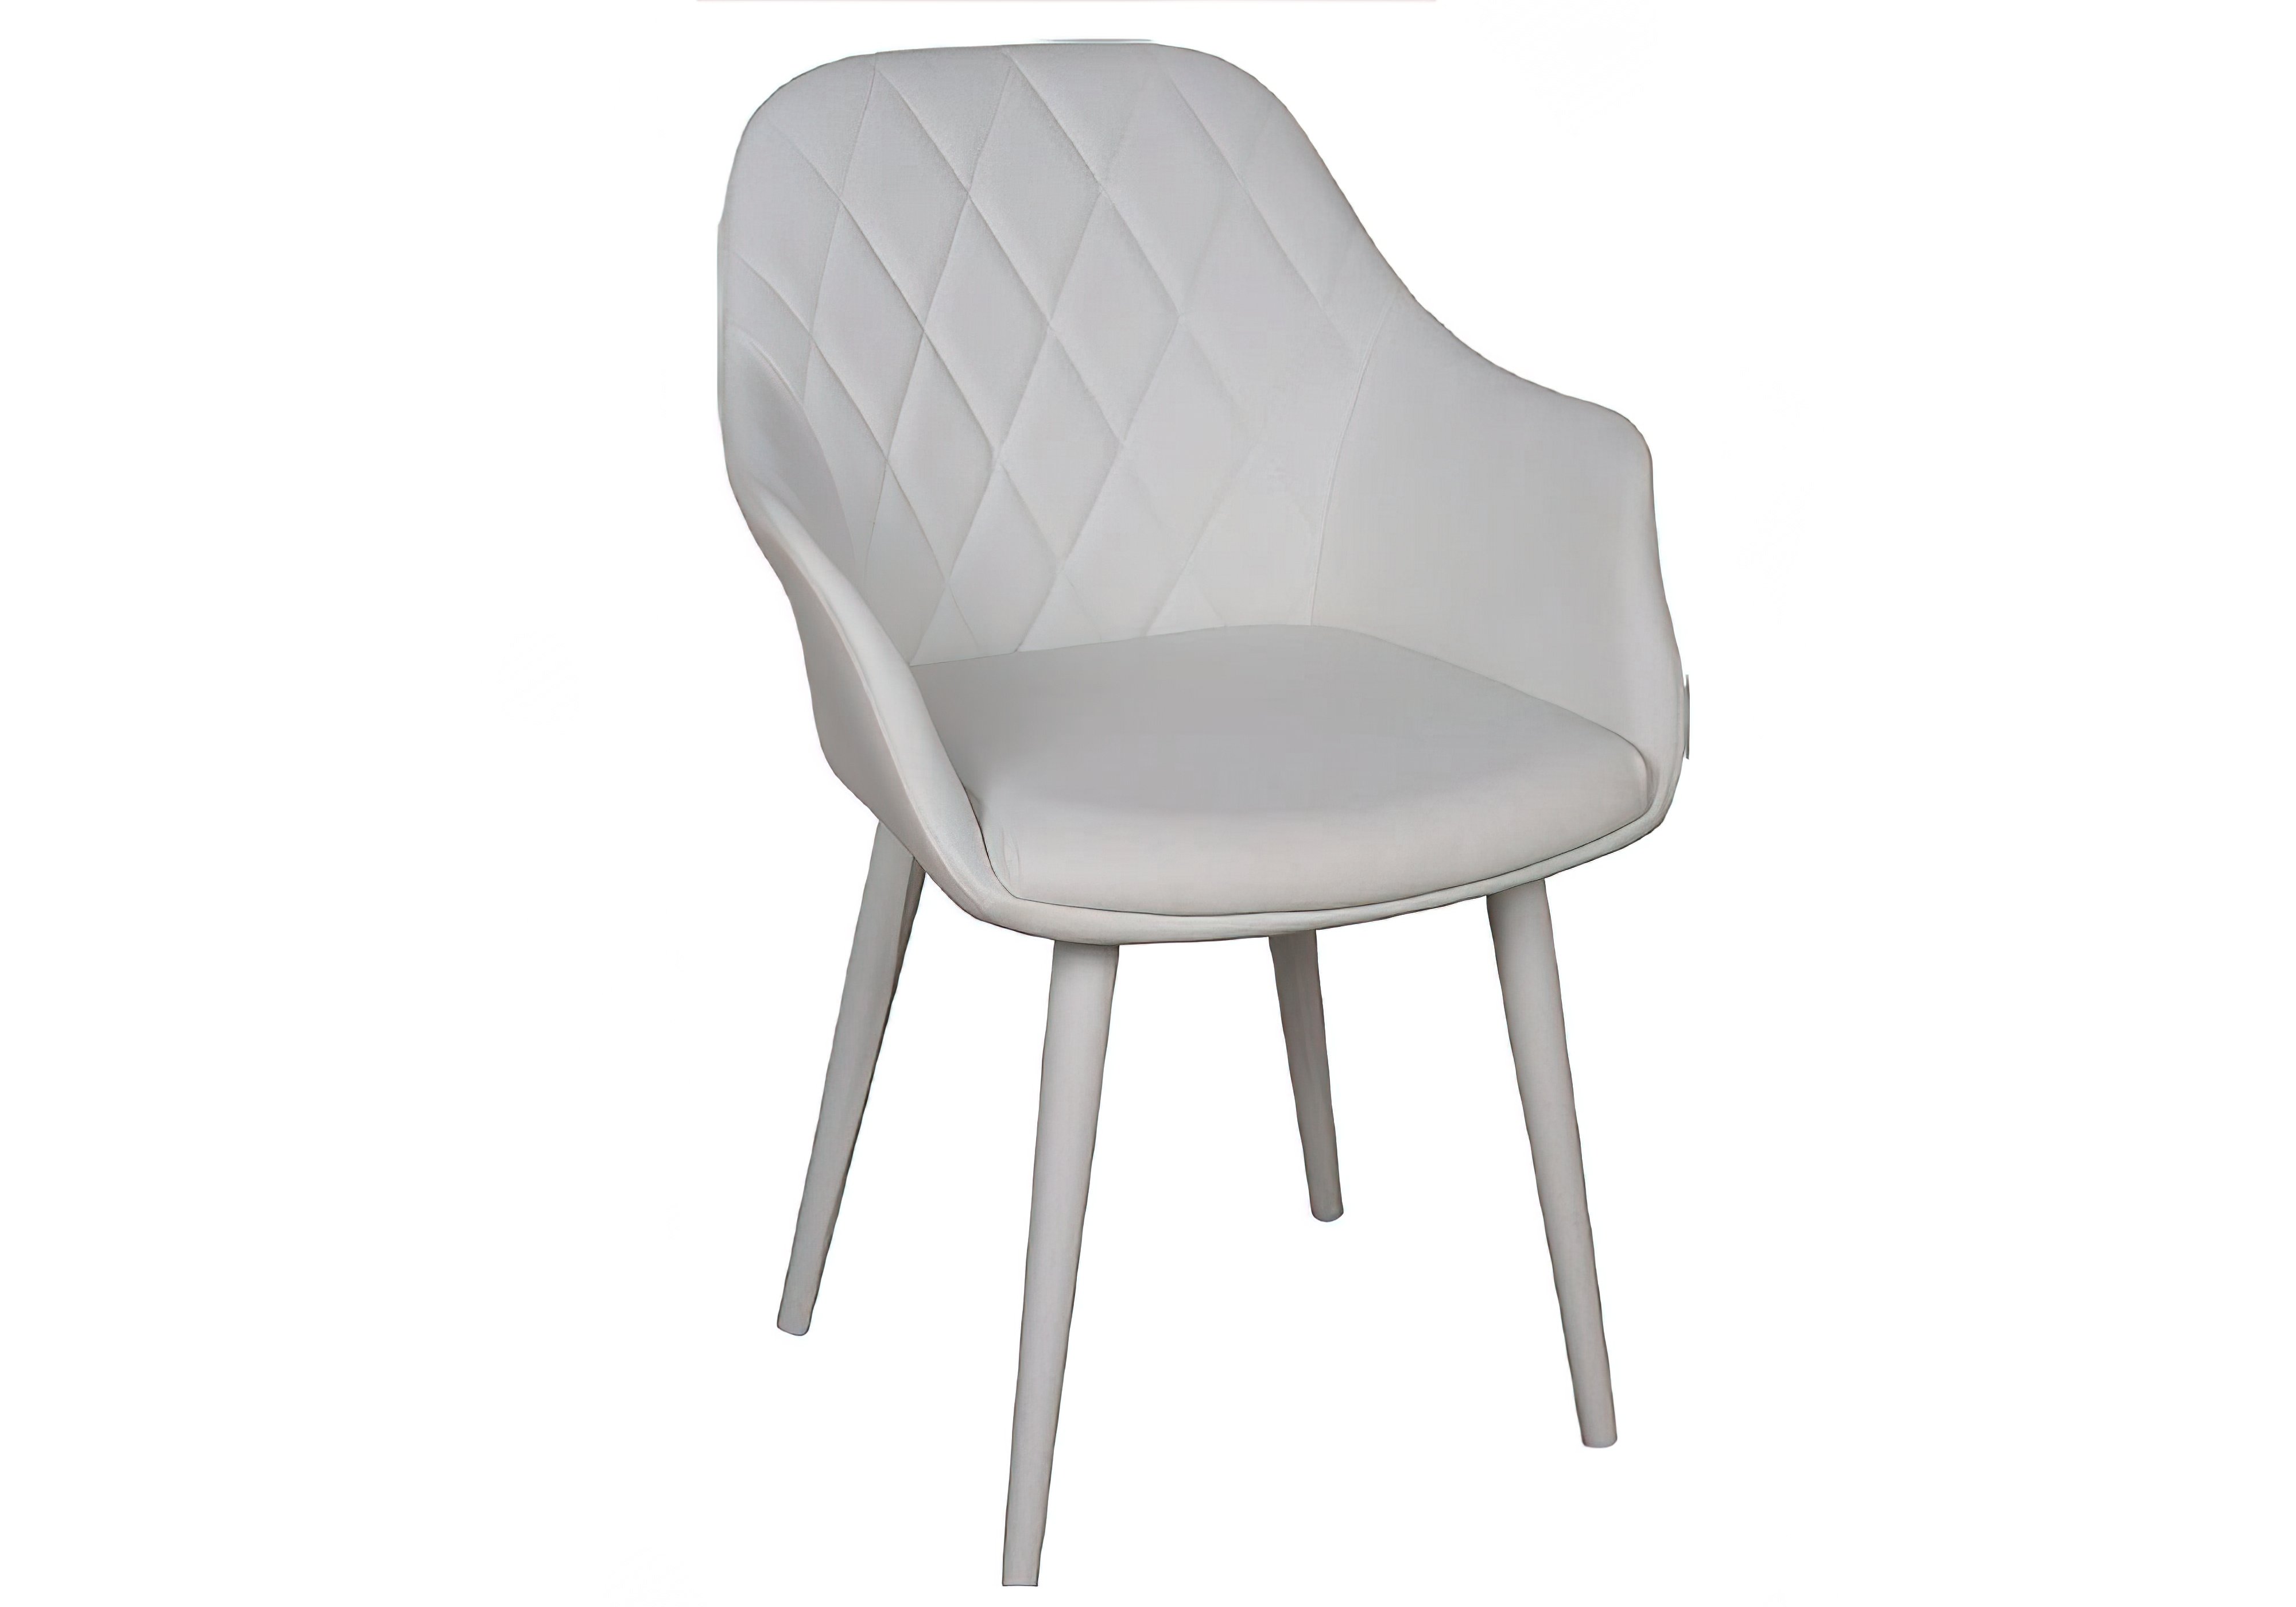 Кухонный стул Zaragoza Калио, Тип Стул-кресло, Высота 88см, Ширина сиденья 61см